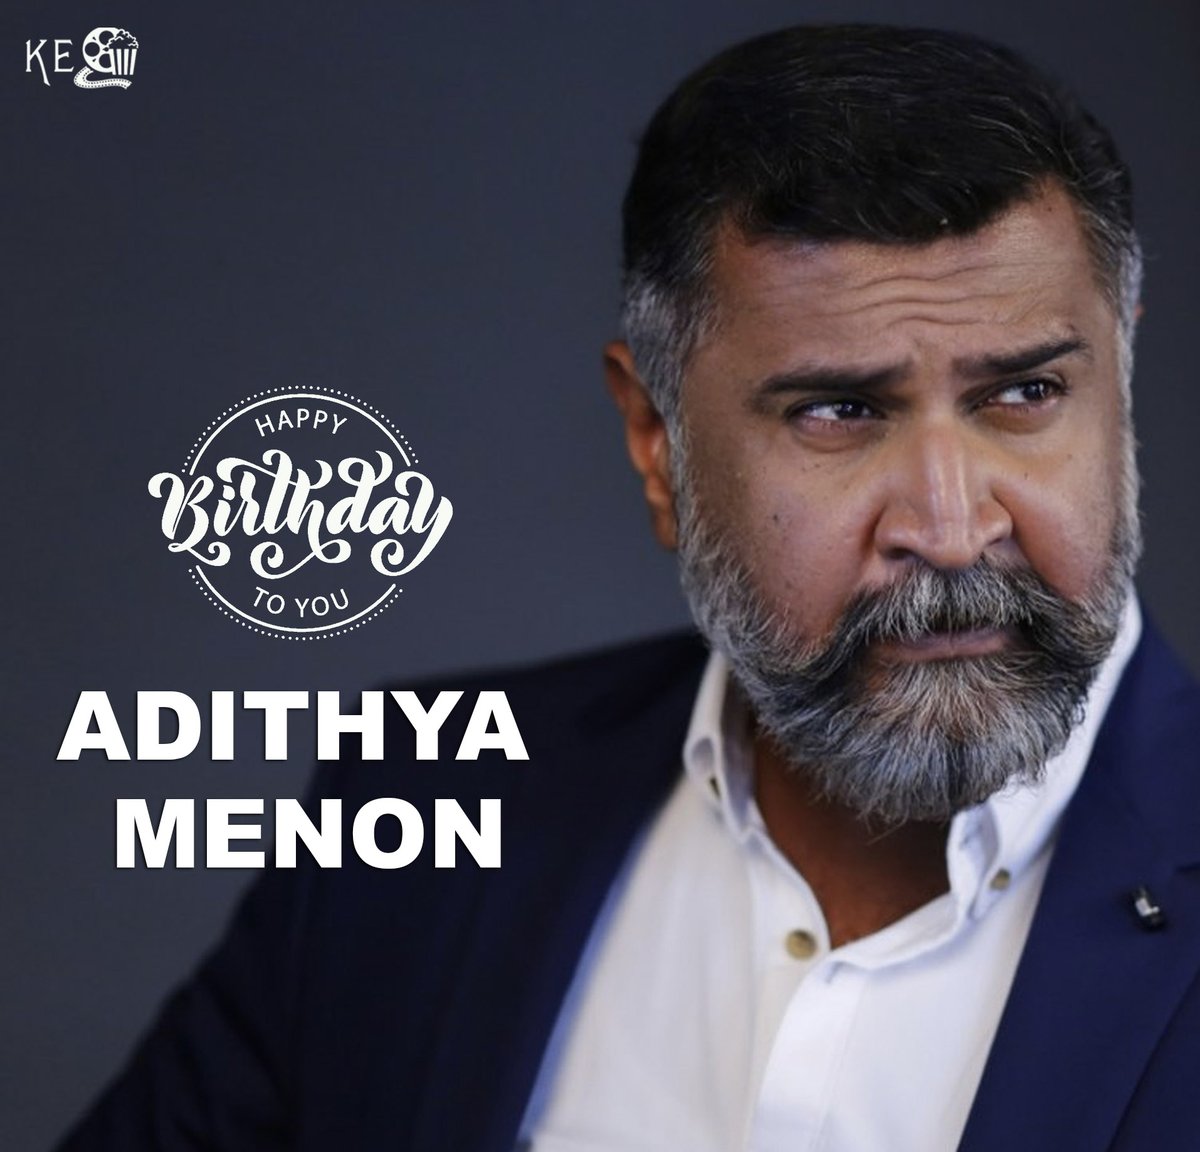 Wishing Adithya Menon Very HappyBirthday
#HappybirthdayAdithyamenon  #HBDAdithyamenon  #Adithyamenon  #Khafaentertainment